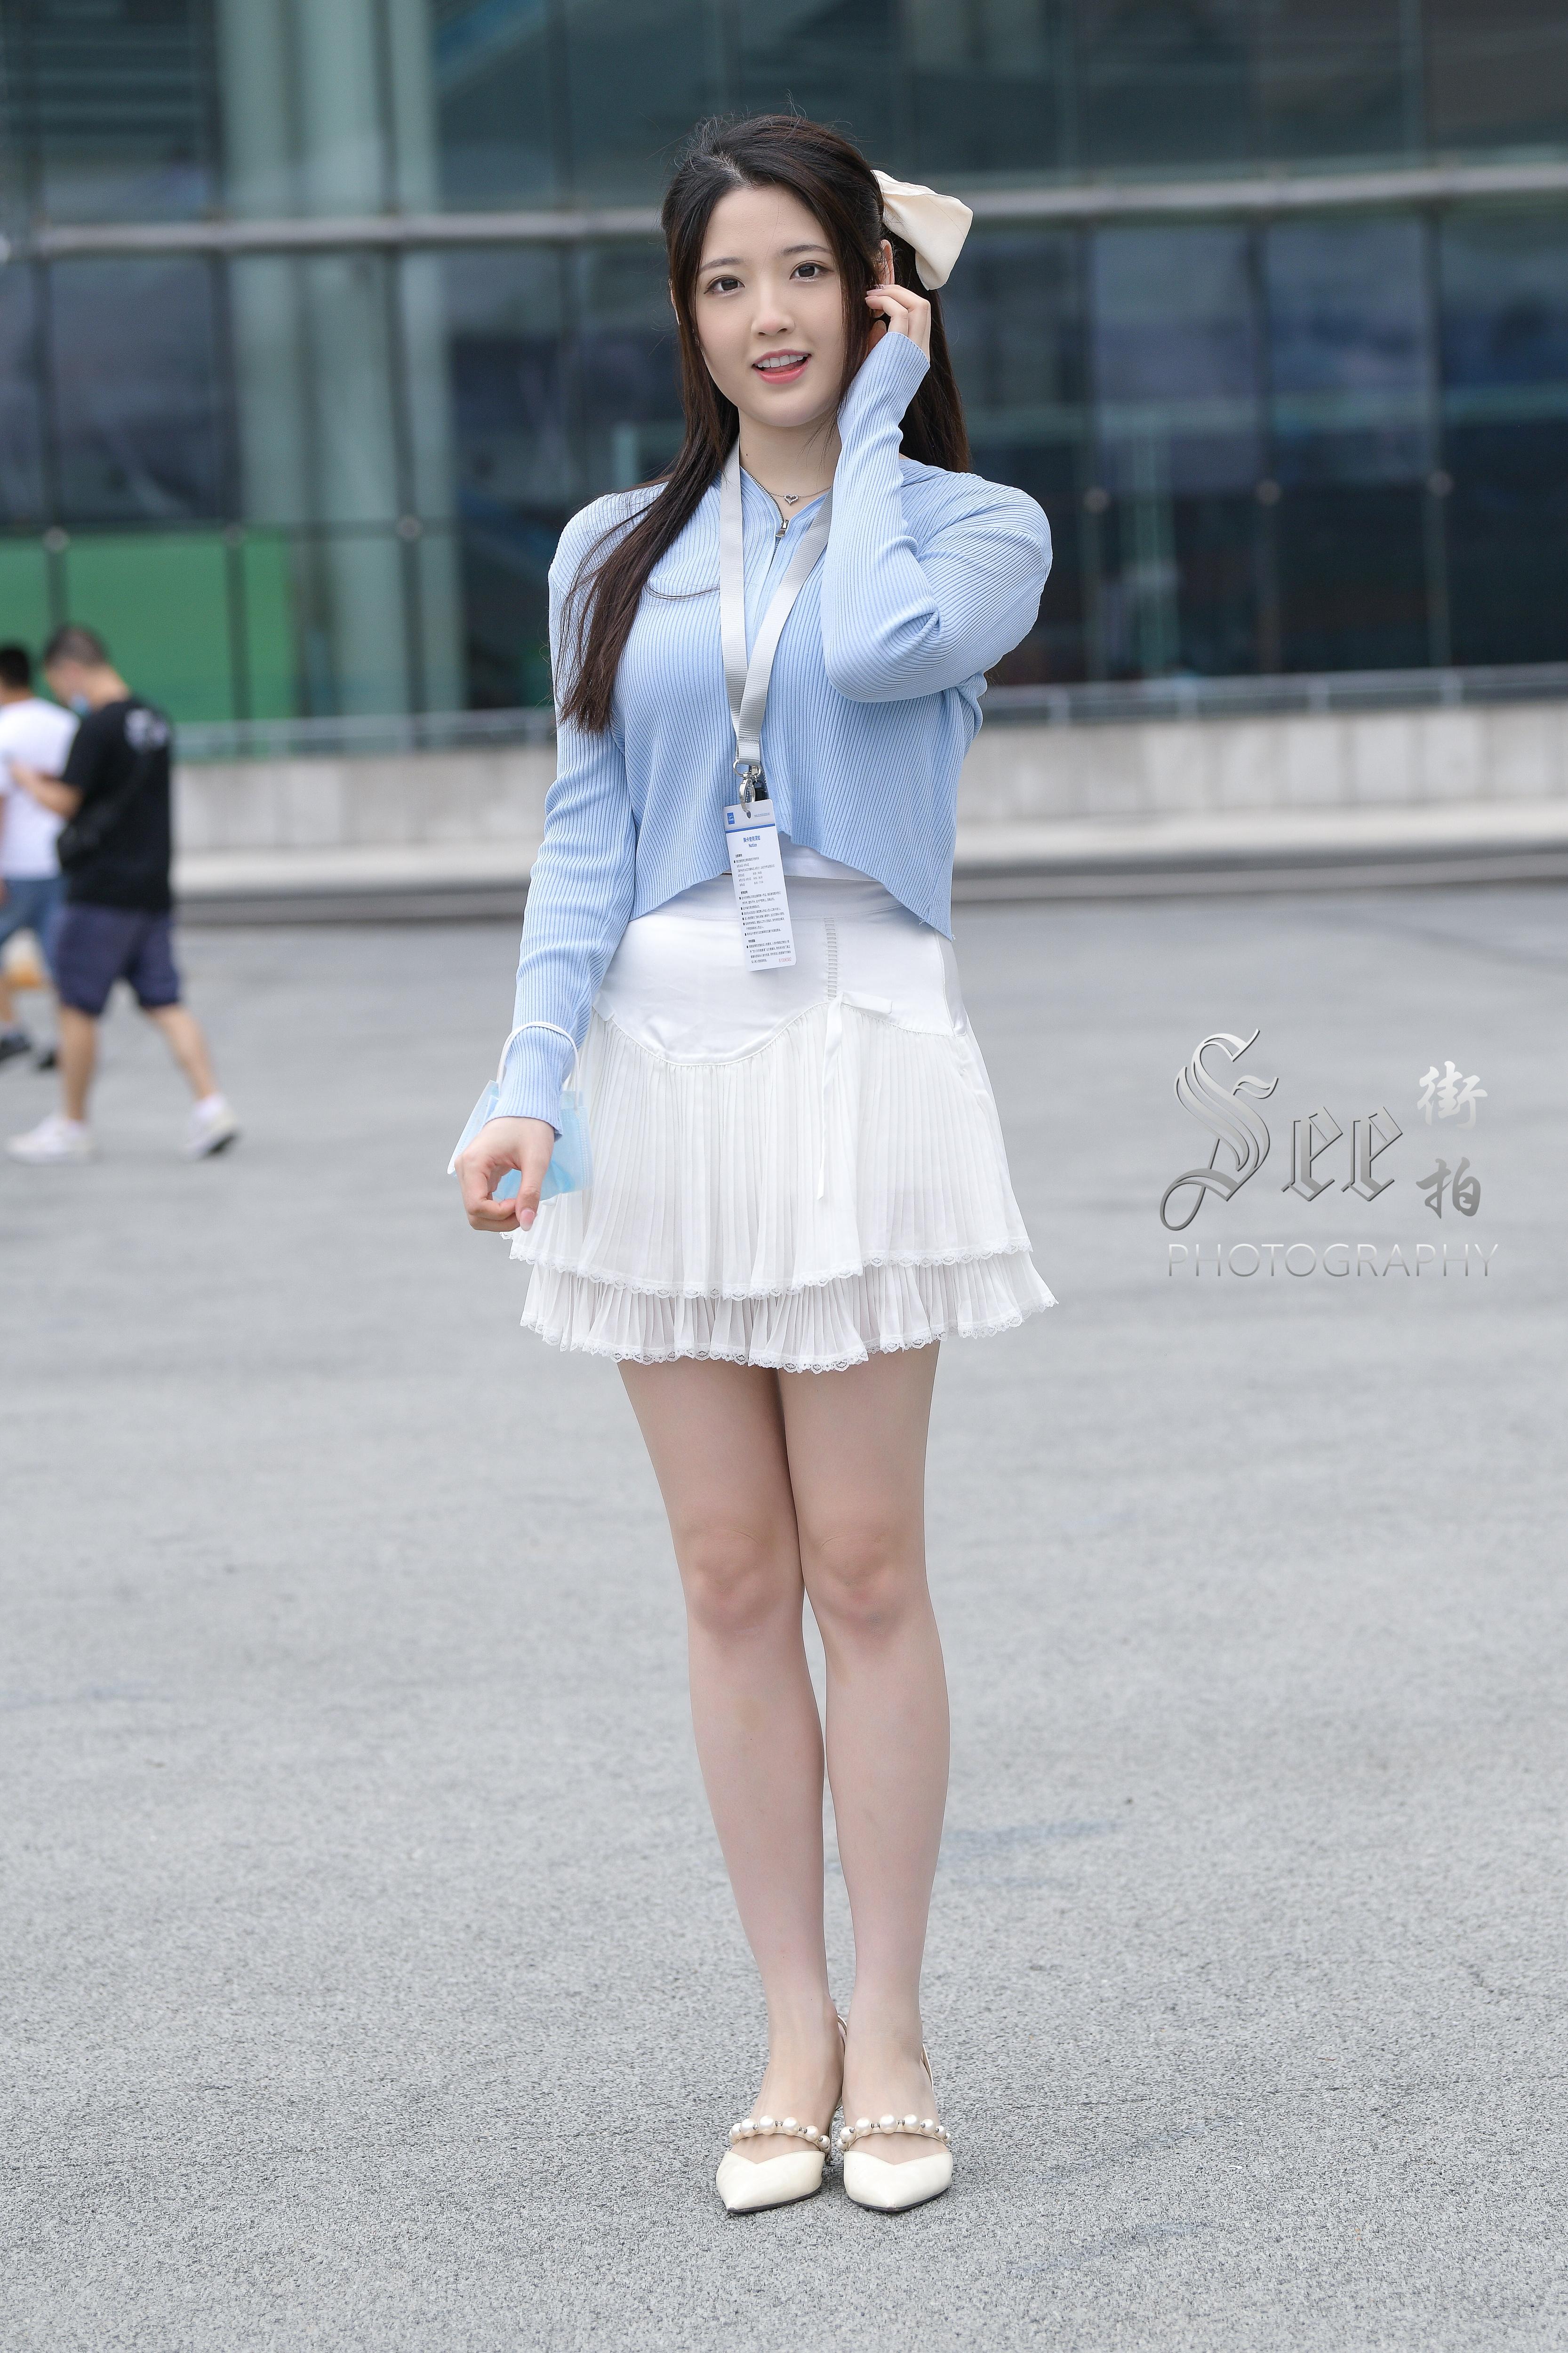 SEE街拍 展会前的阳光少女 蓝色外套加白色短裙清甜可爱美丽,1 (1)